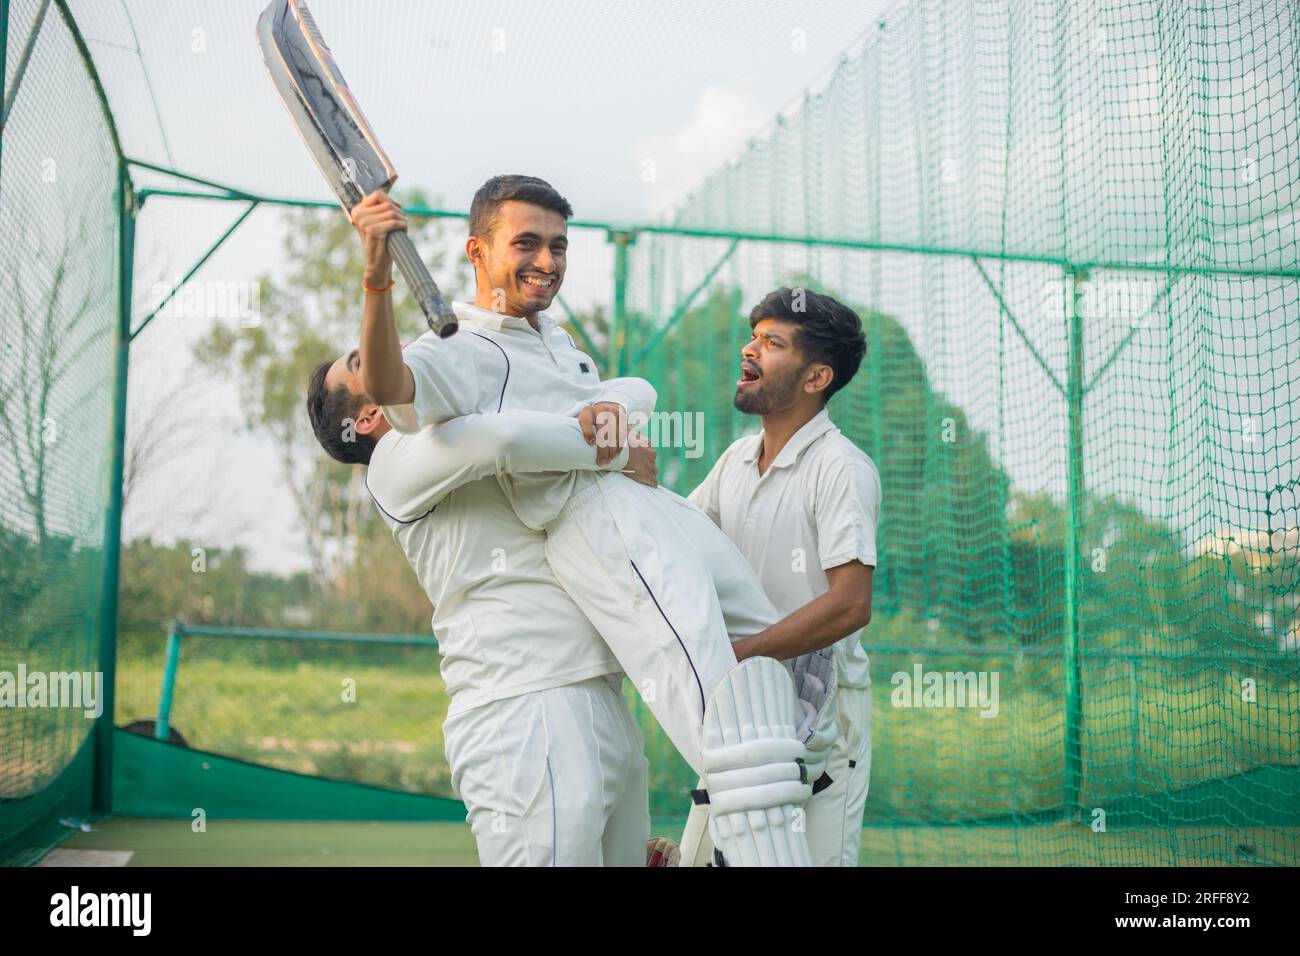 Joueurs de cricket célébrant leur victoire ou victoire sur le terrain de cricket Banque D'Images